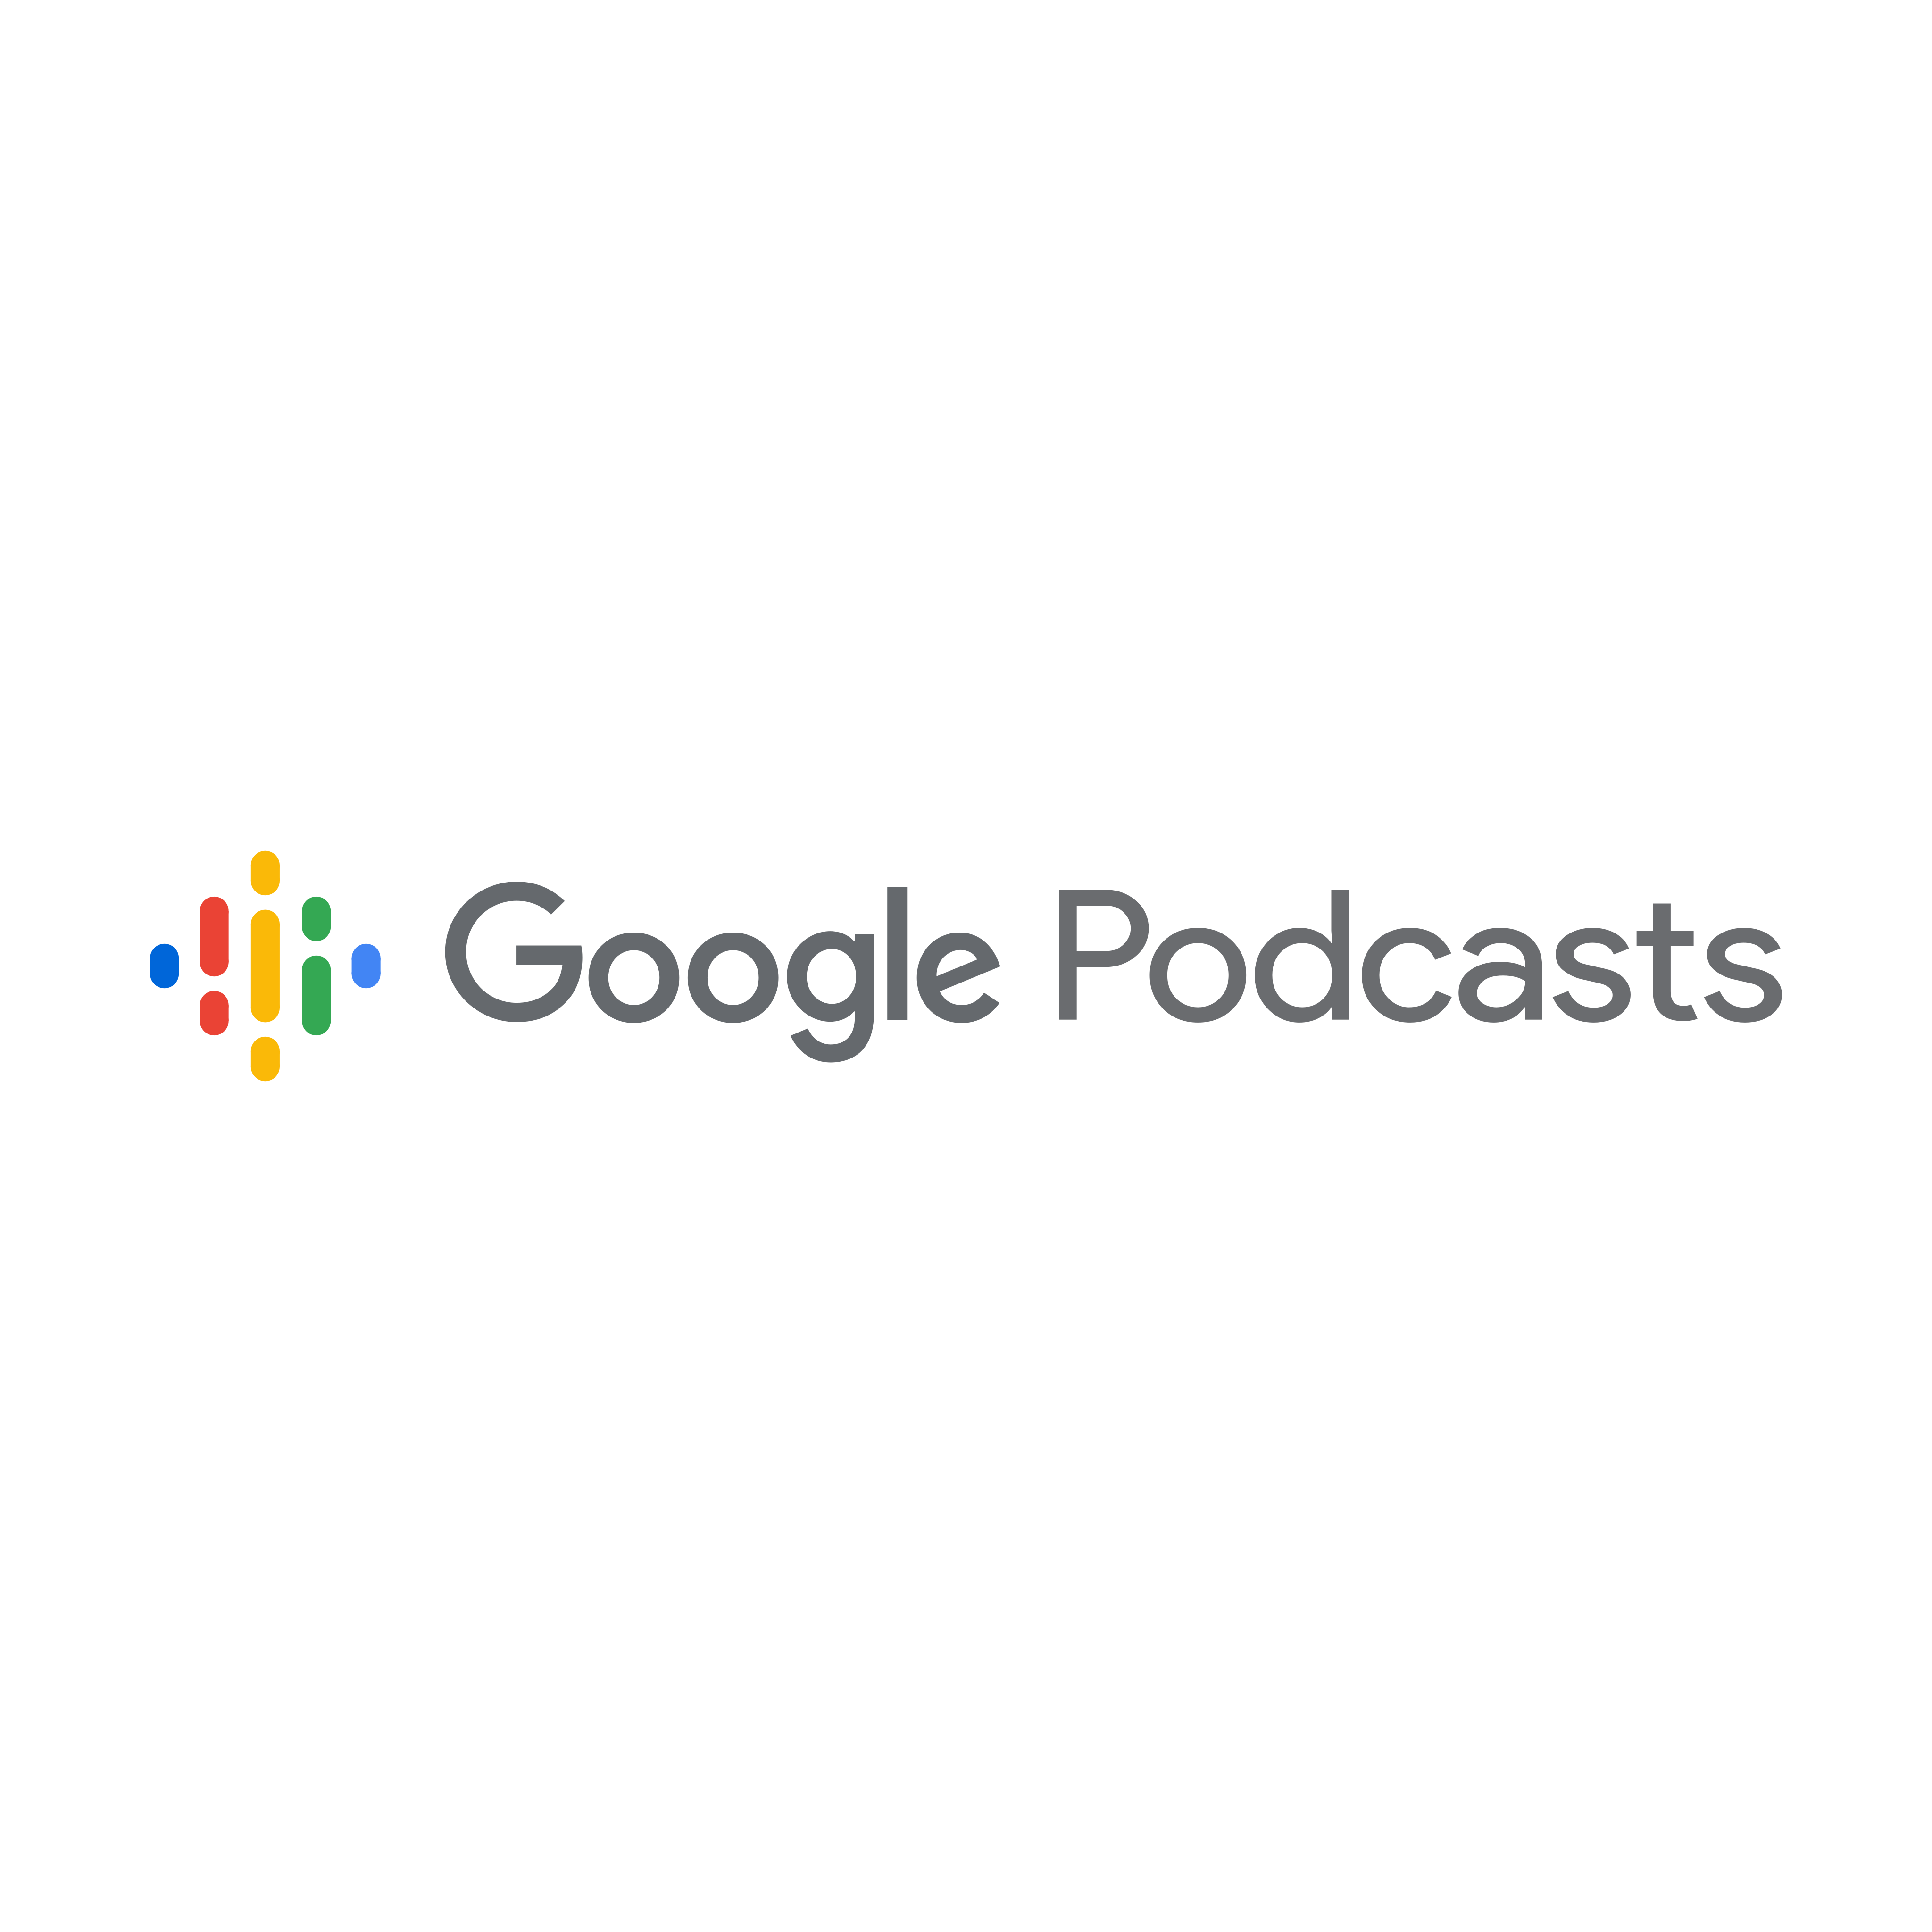 google podcasts logo 0 - Google Podcasts Logo